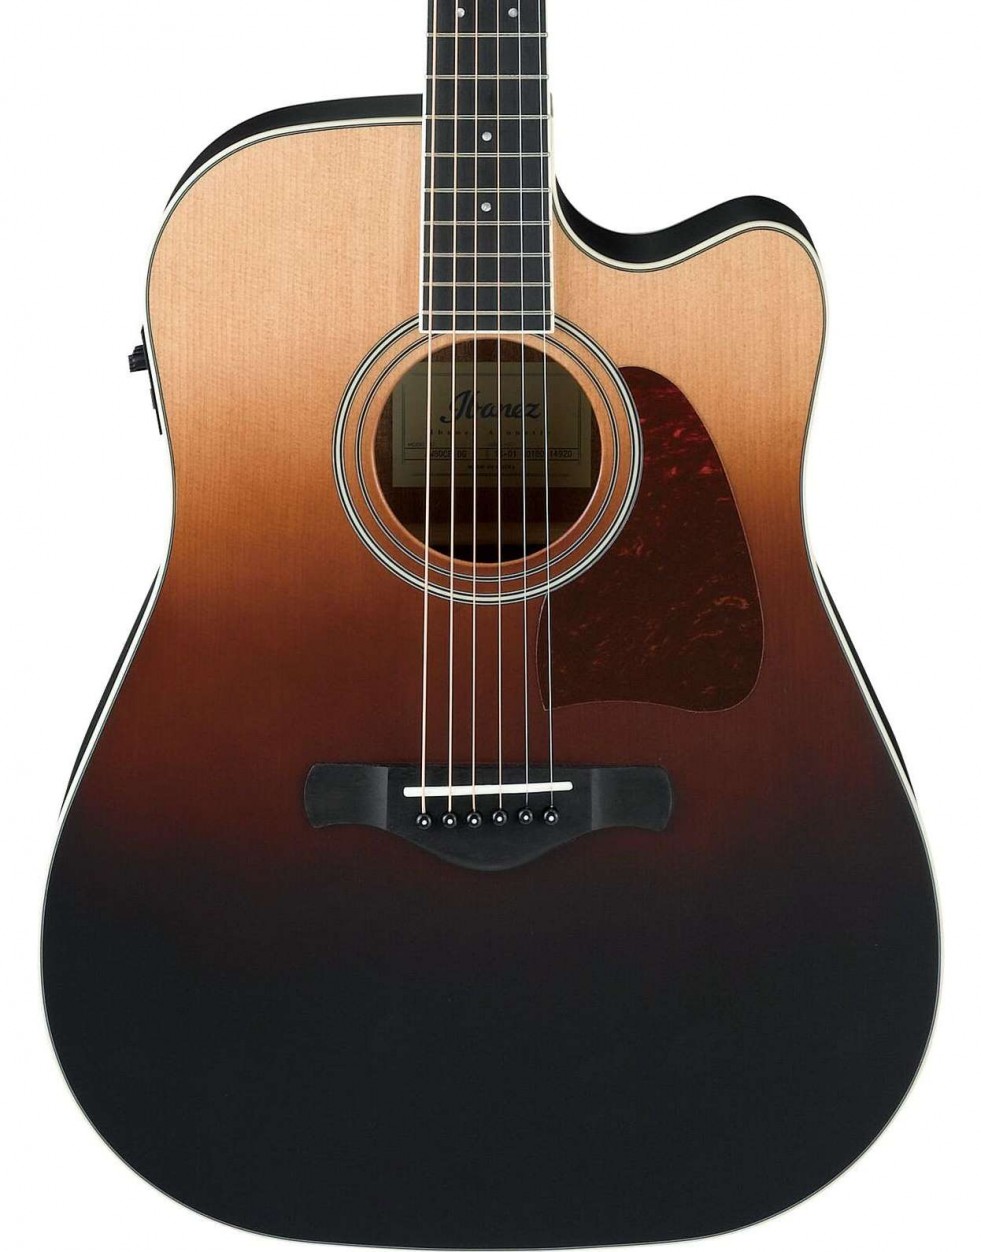 Ibanez AW80CE-BLG Artwood электроакустическая гитара, цвет коричневый градиент